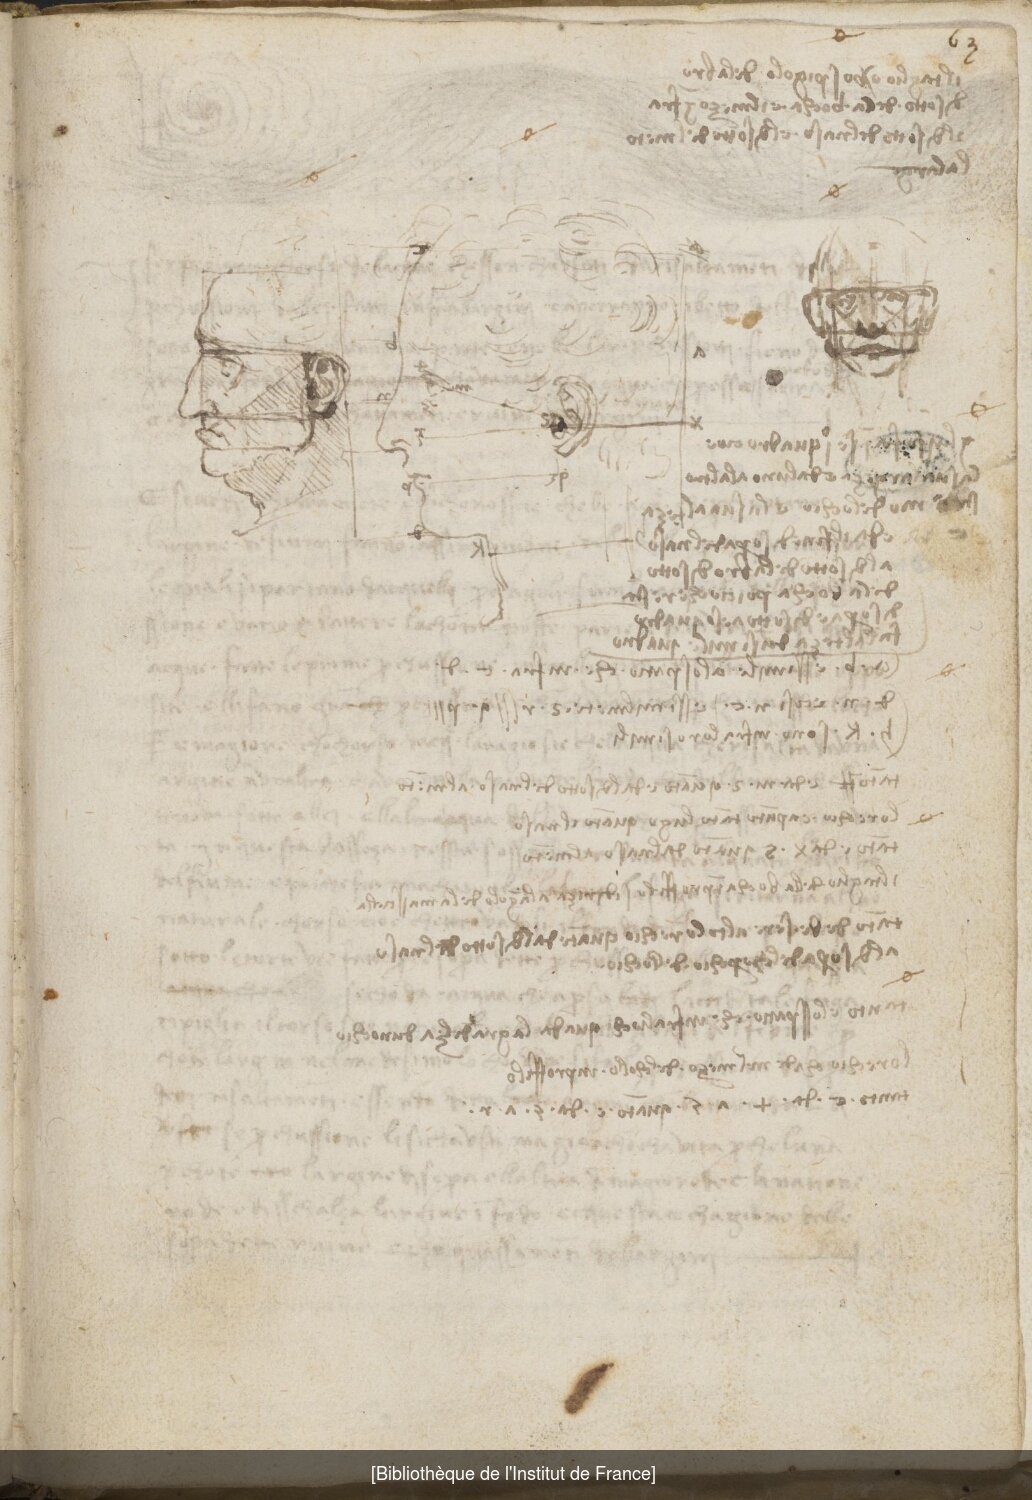 Ms 2172 (Manuscrit A), f. 63r : études sur les proportions de la tête du cheval et de la figure humaine.